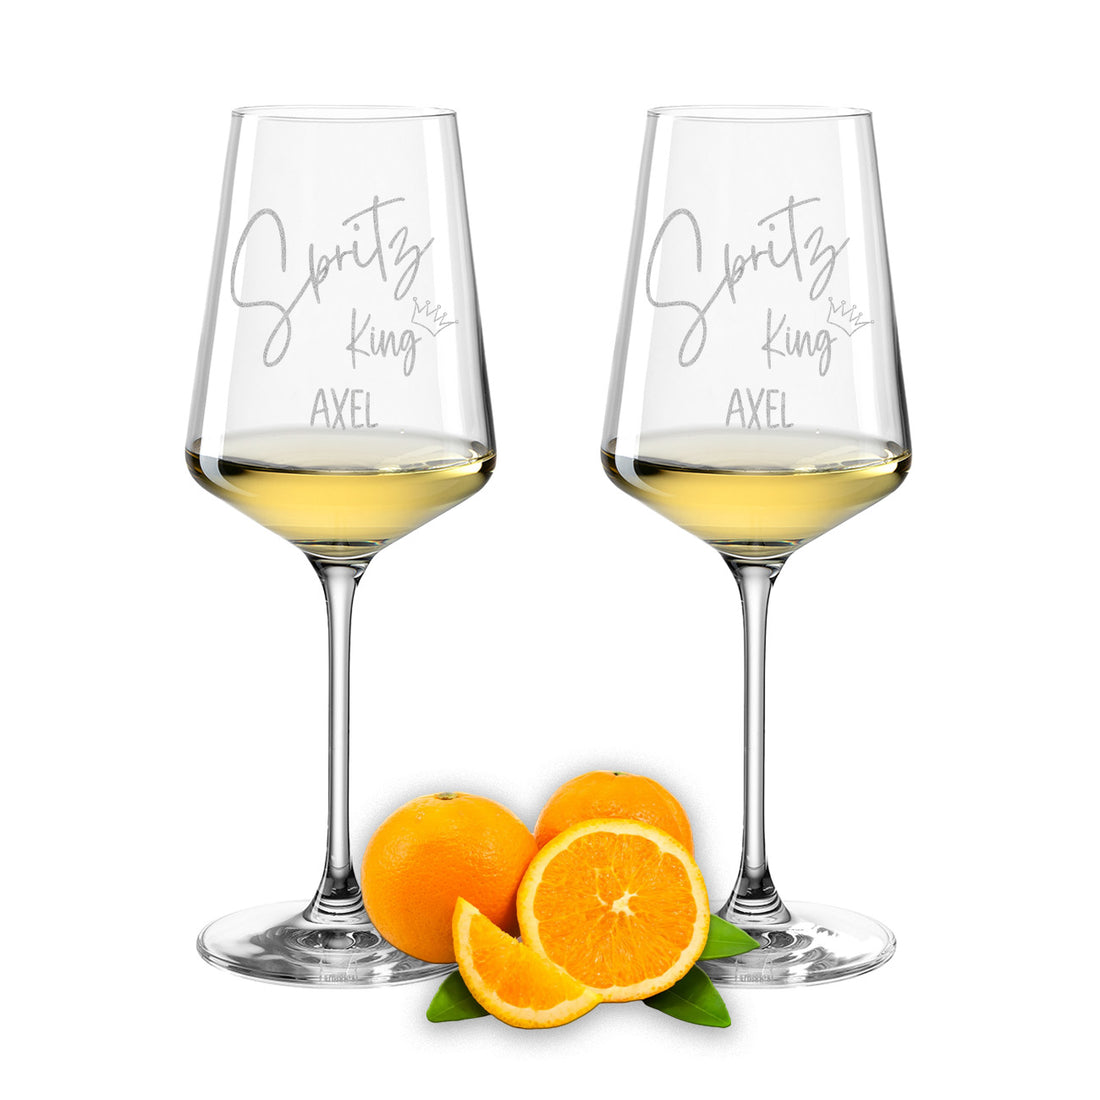 Weinglas mit Gravur Leonardo Puccini "SPRITZ KING" 2 Gläser mit Wunschname